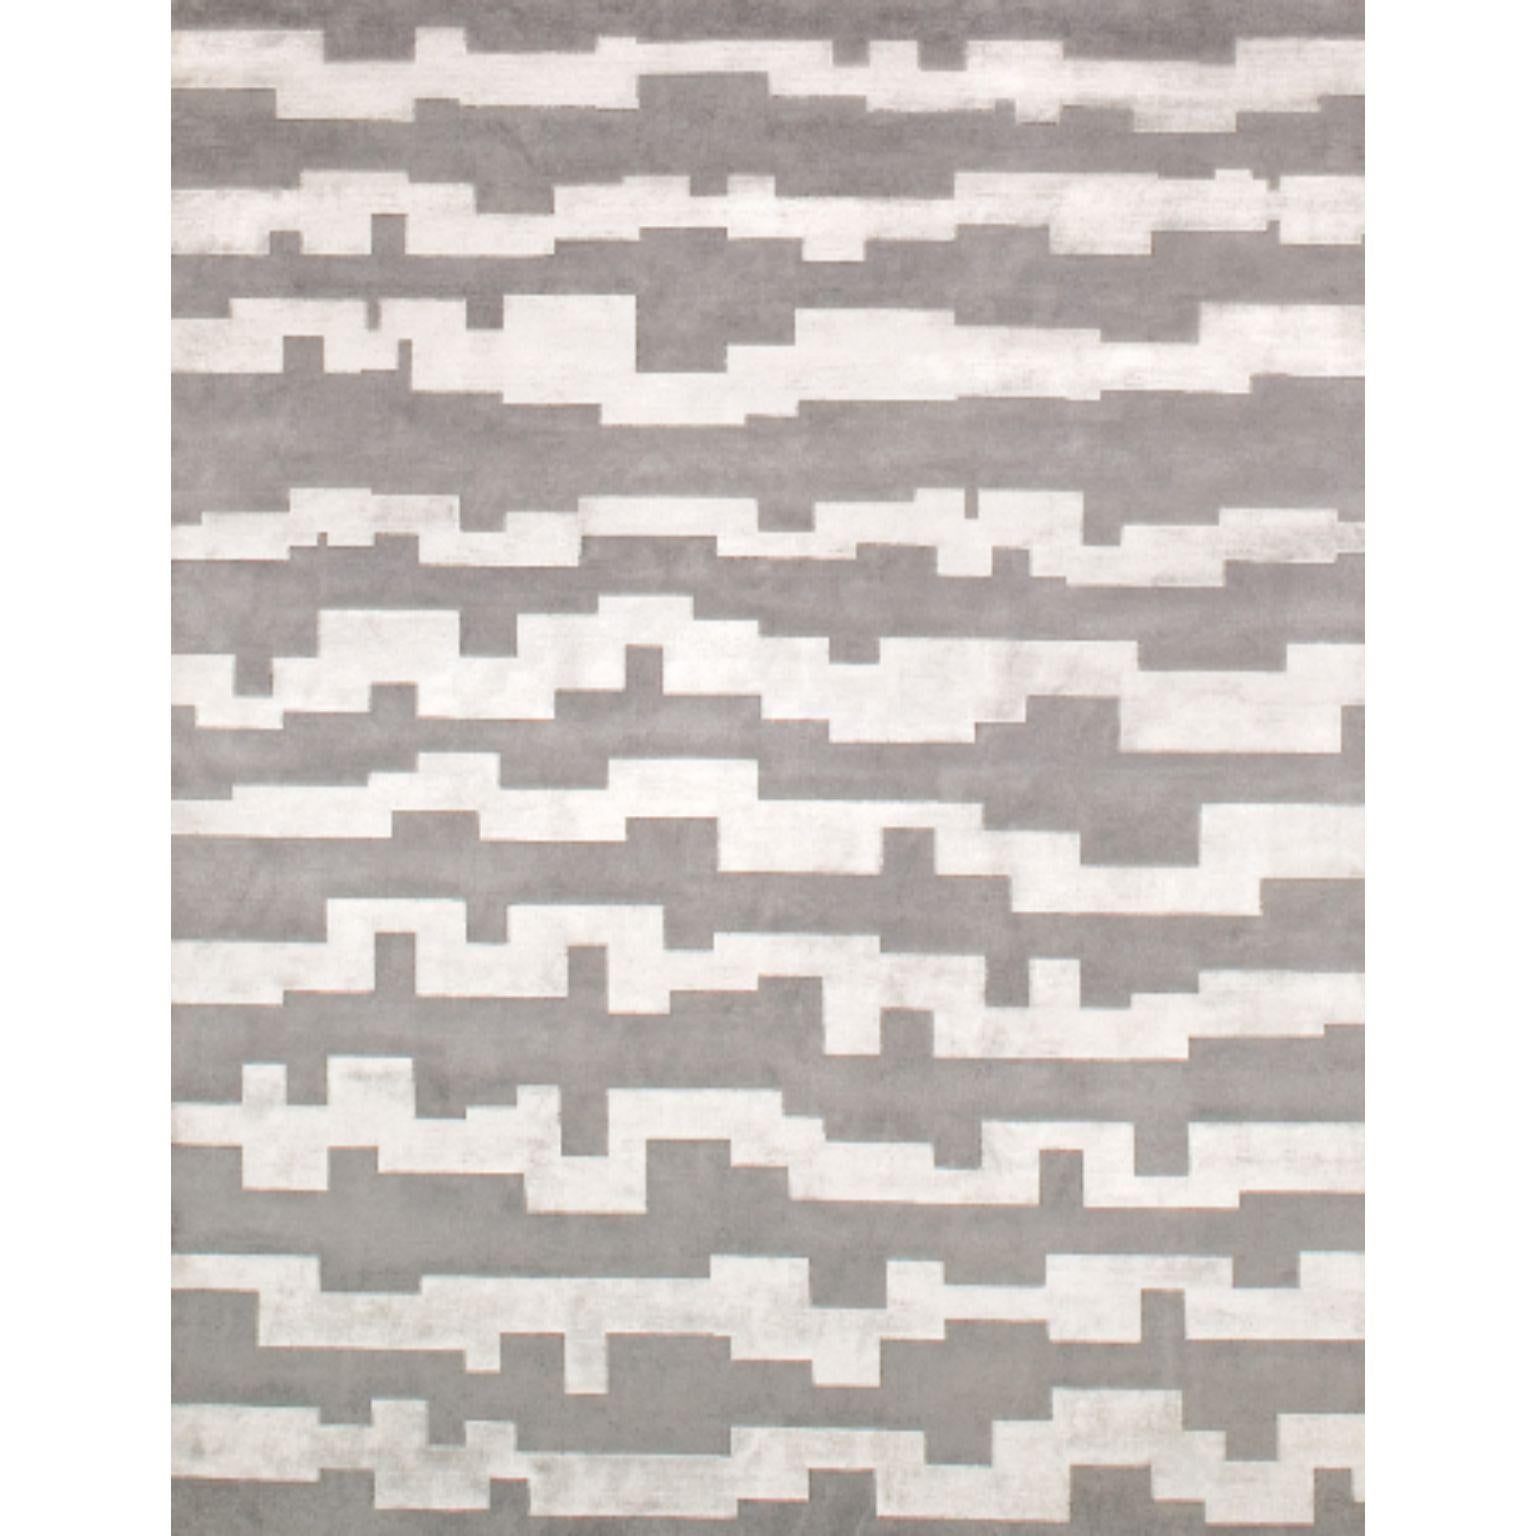 AZTEC-Teppich von Illulian
Abmessungen: D 300 x H 200 cm 
MATERIALIEN: Wolle 50%, Seide 50%
Je nach MATERIAL und Größe sind verschiedene Varianten möglich und die Preise können variieren.

Illulian, eine historische und prestigeträchtige